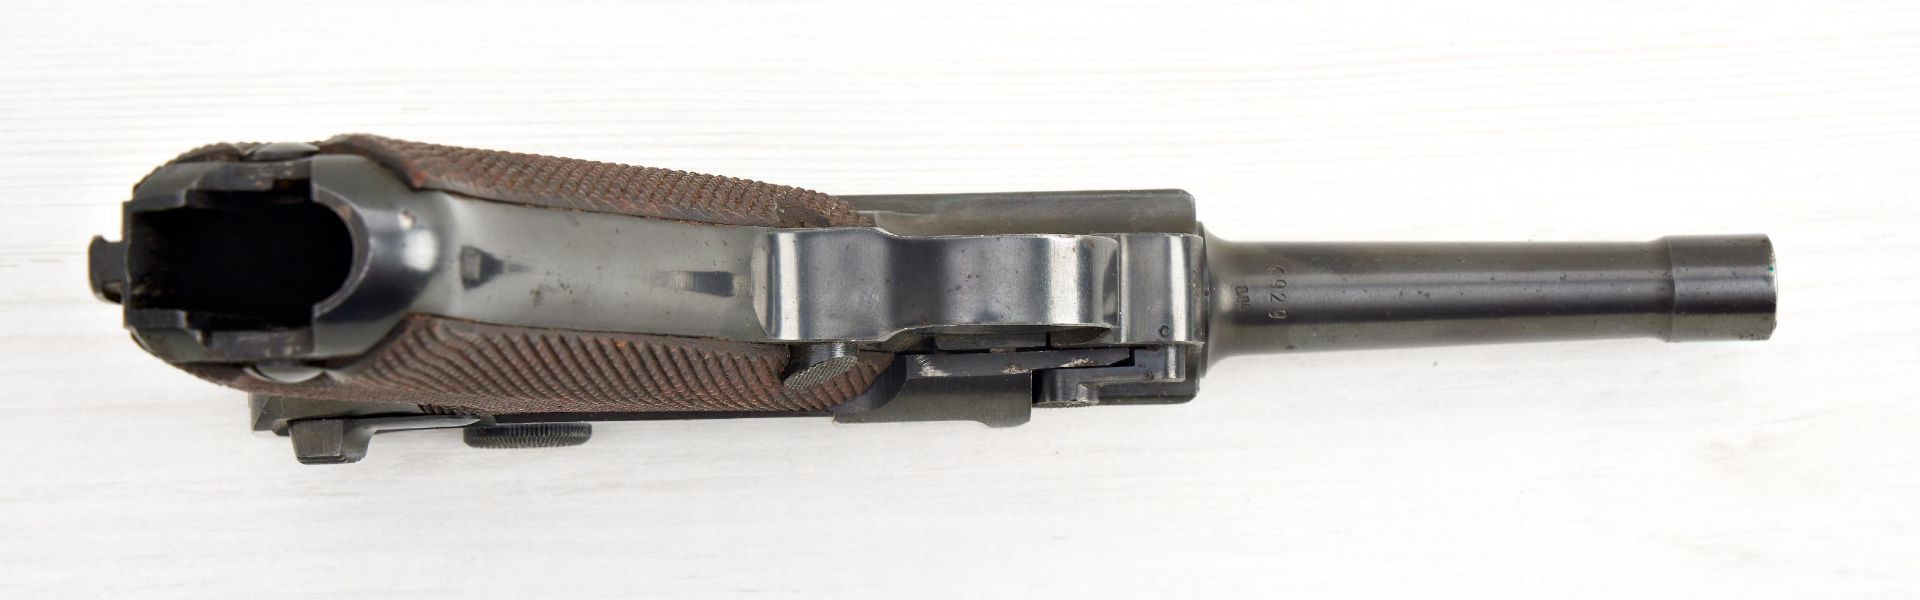 Kurzwaffen (militärisch) : Pistole P08 (byf 1941) im Kaliber 9 mm Luger, Seriennummer 4929 - Image 4 of 4